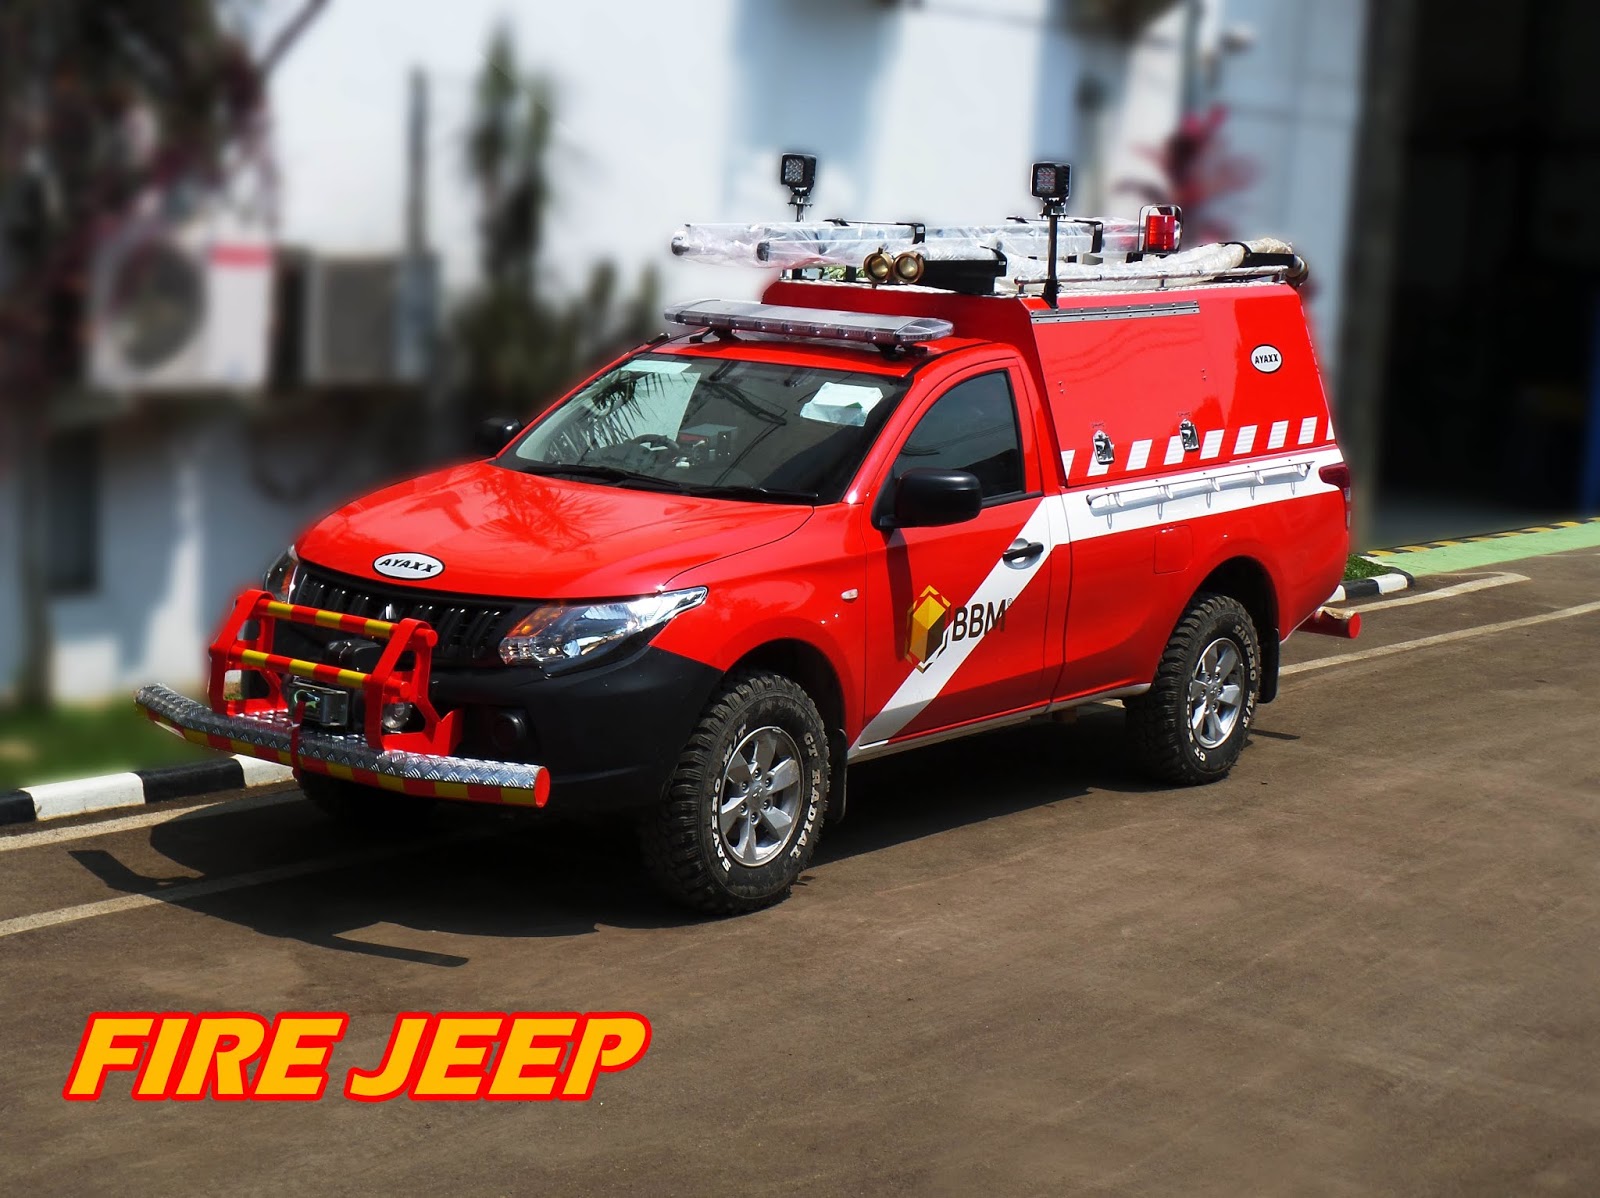 Jual Mobil Pemadam Kebakaran Indonesia Manufacture Fire Truck And